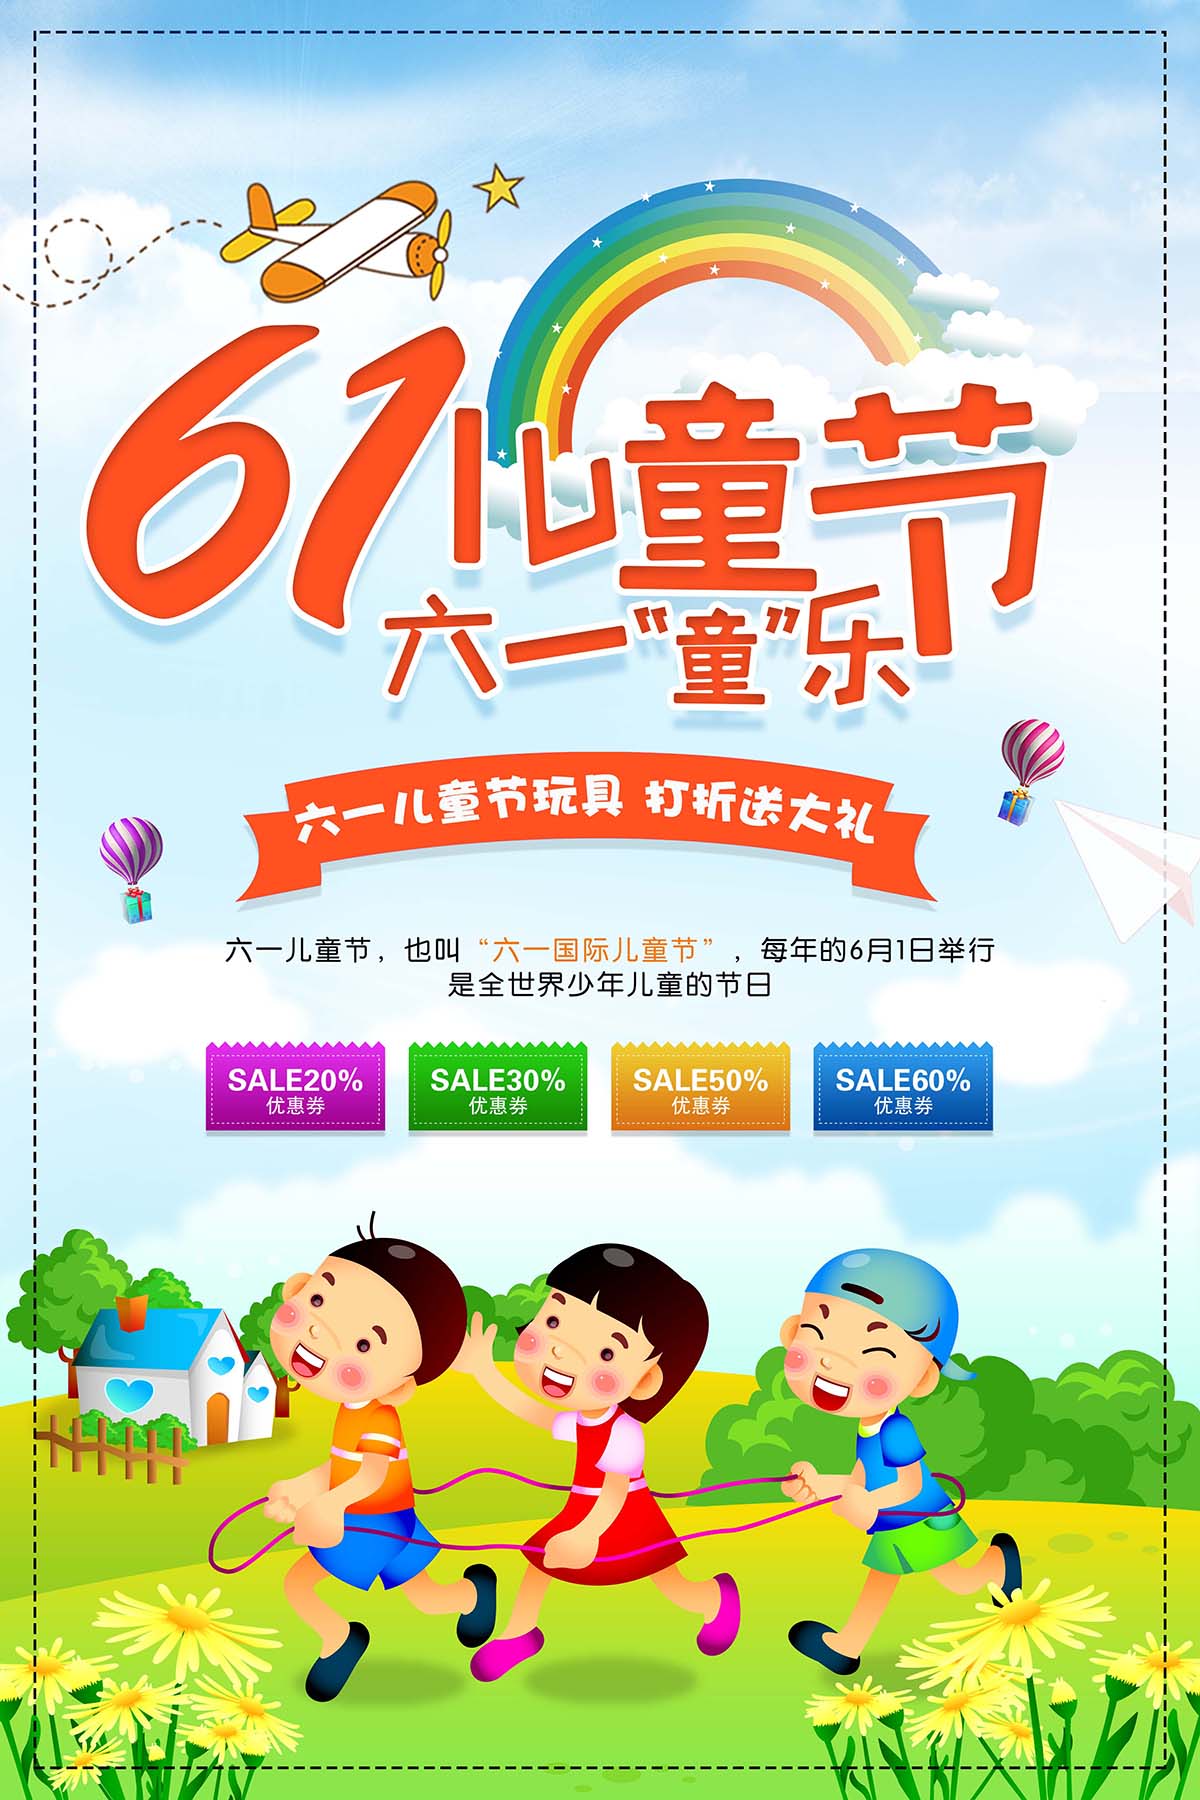 61六一儿童节玩具打折送大礼海报设计PSD源文件